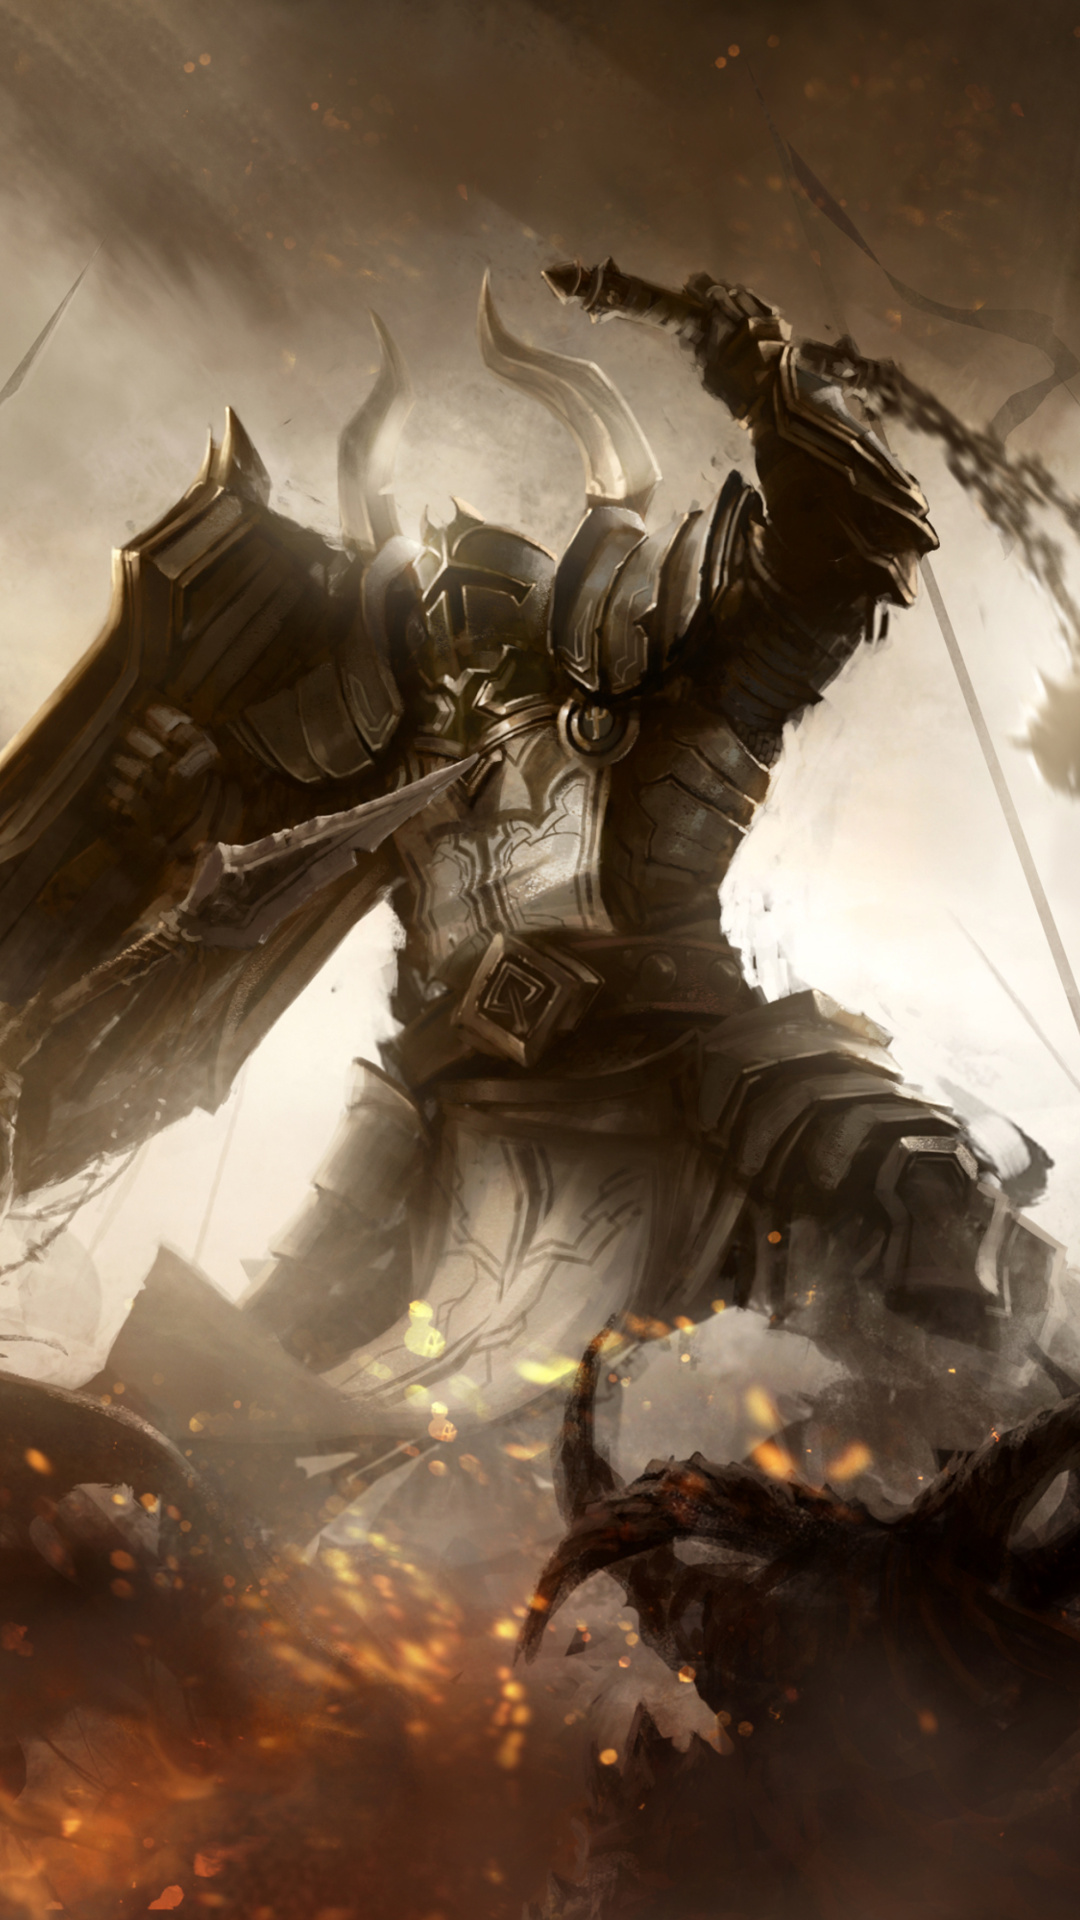 Das Diablo III battle of knights Wallpaper 1080x1920